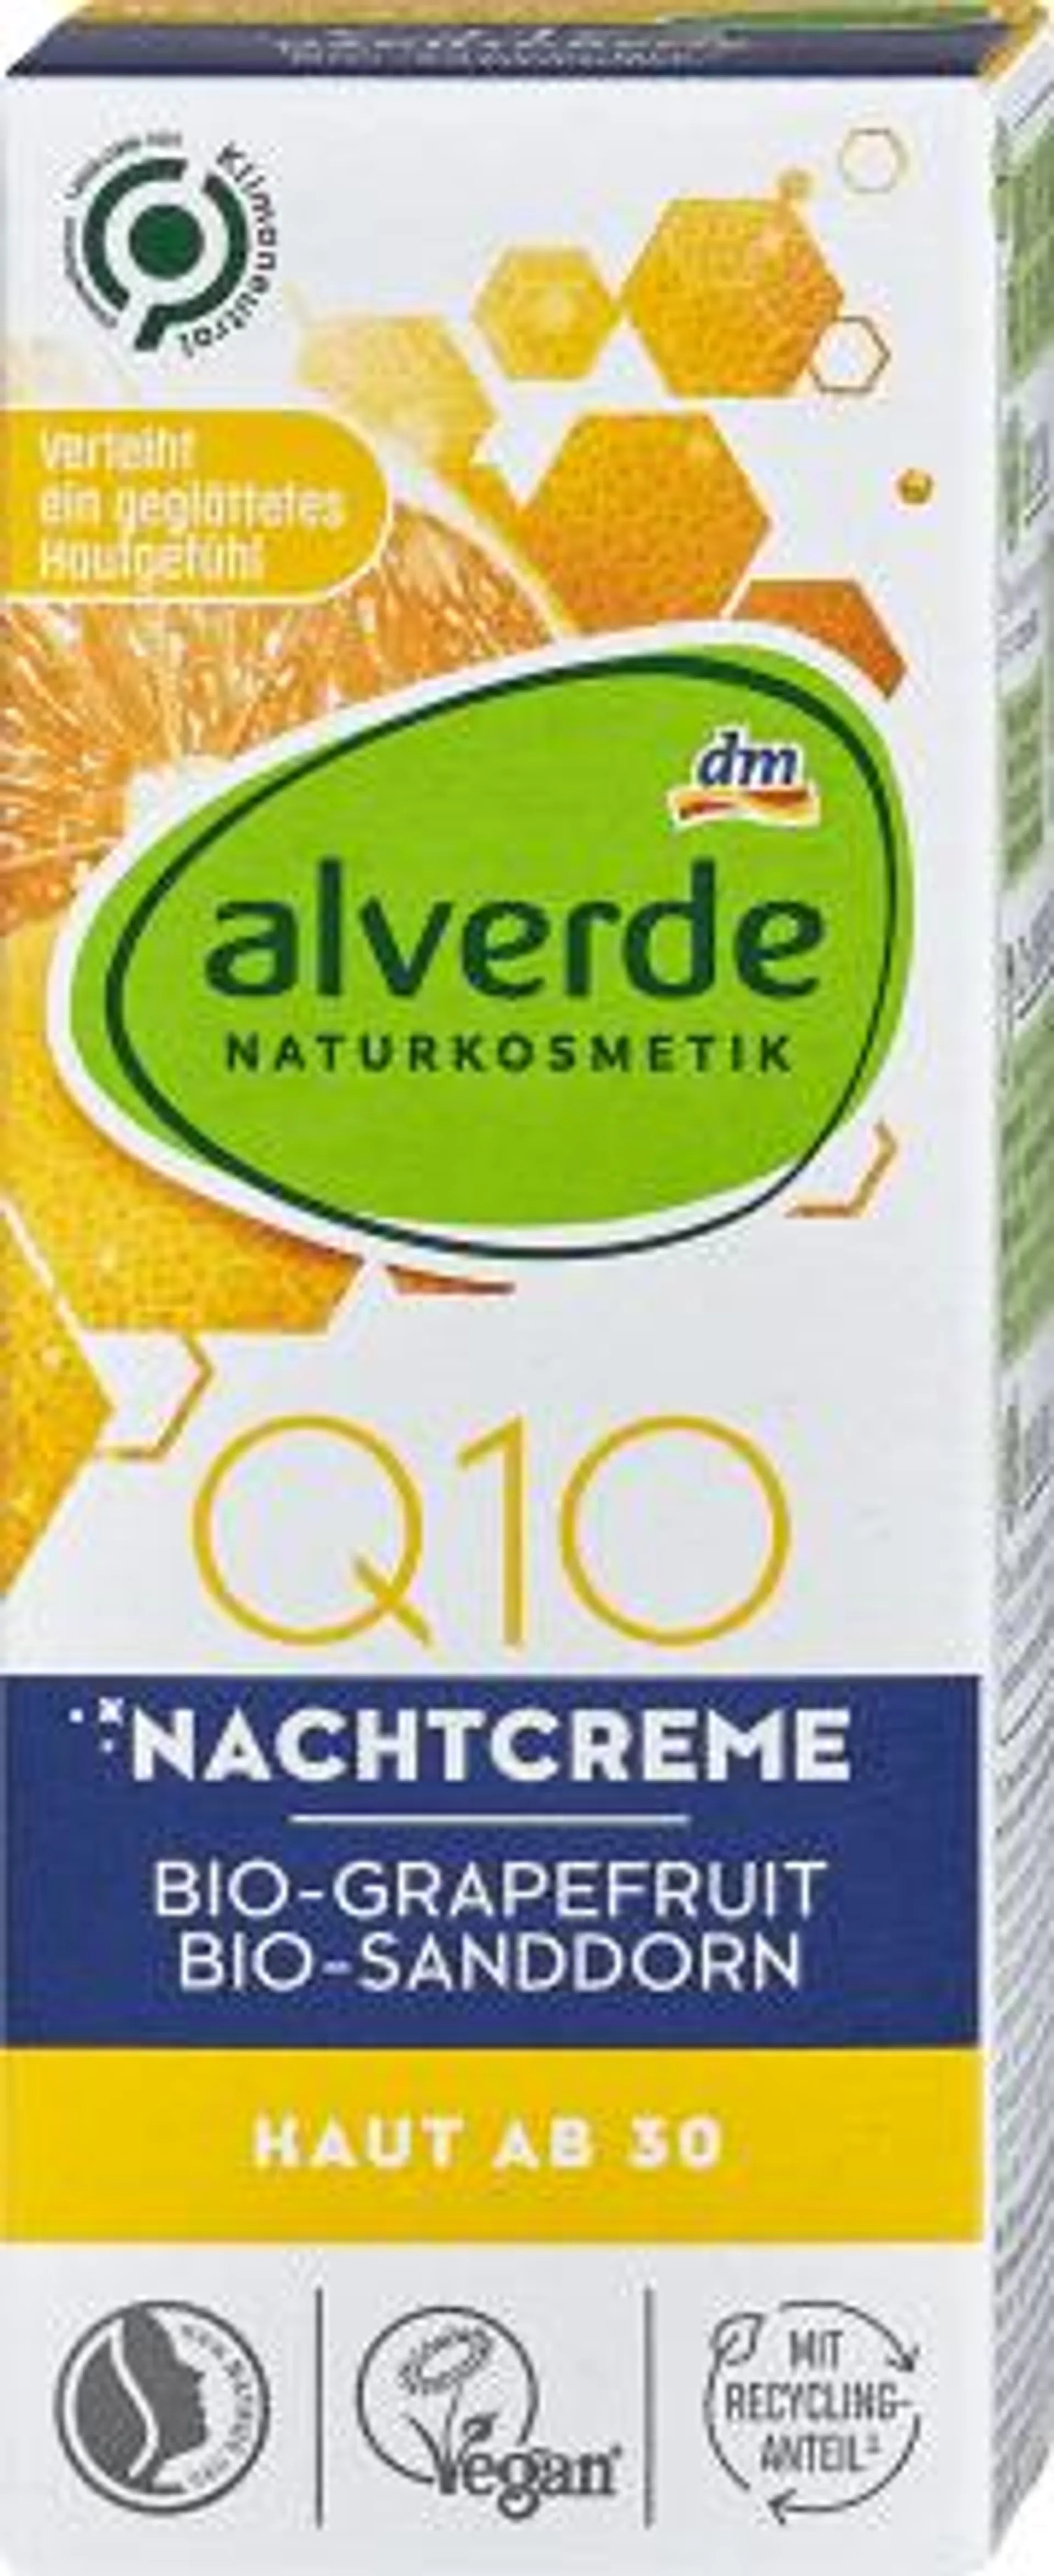 Nočný pleťový krém Q10 s bio grapefruitom a bio rakytníkom rešetliakovým, 50 ml